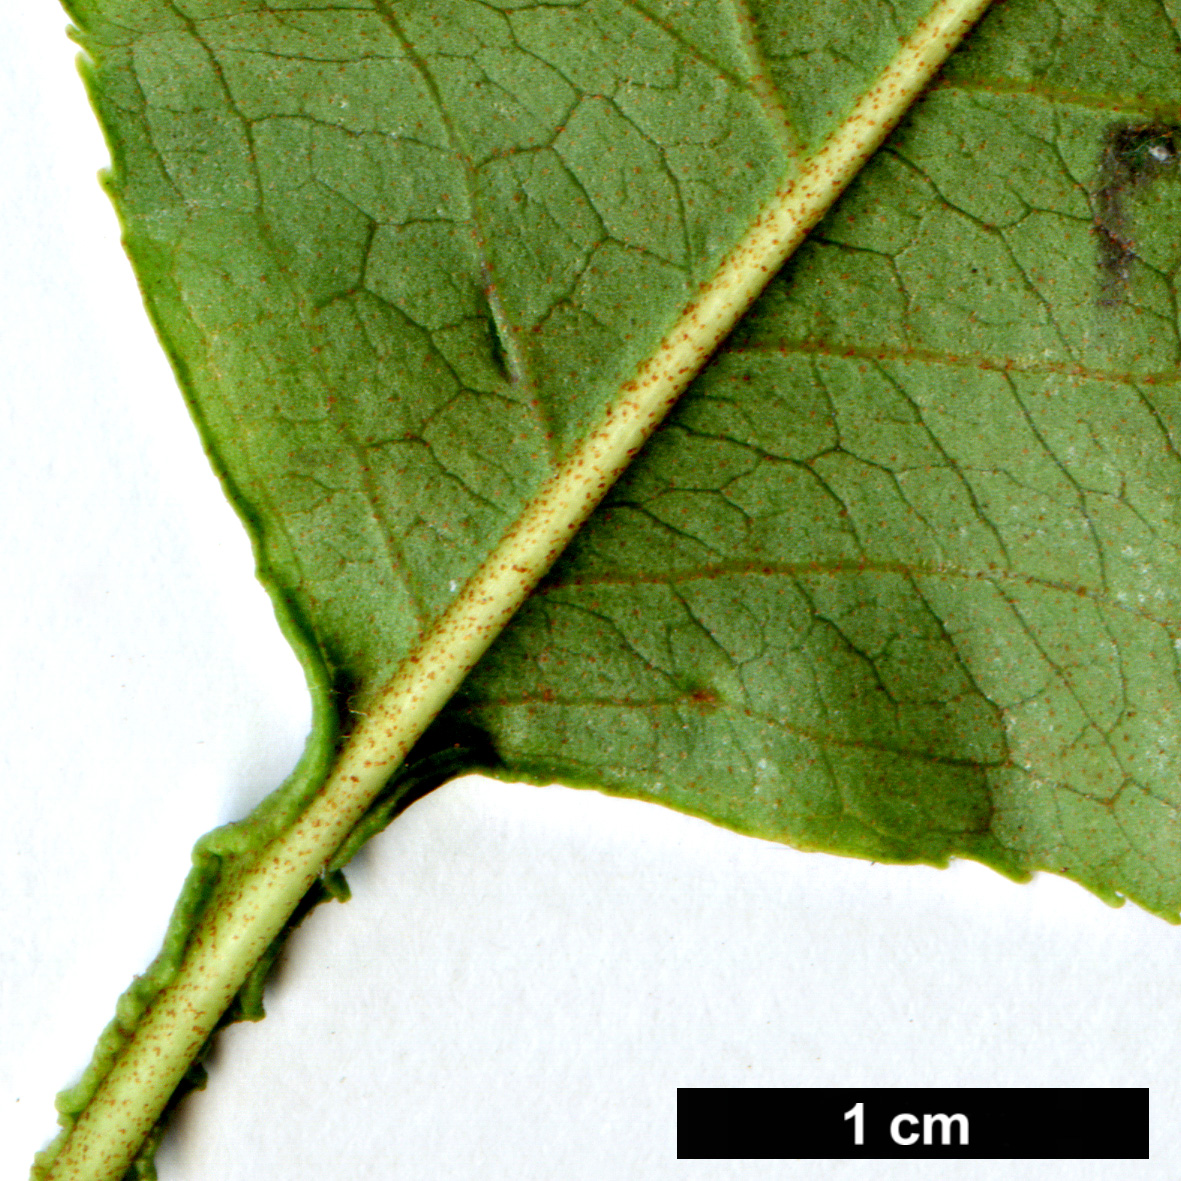 High resolution image: Family: Adoxaceae - Genus: Viburnum - Taxon: lentago